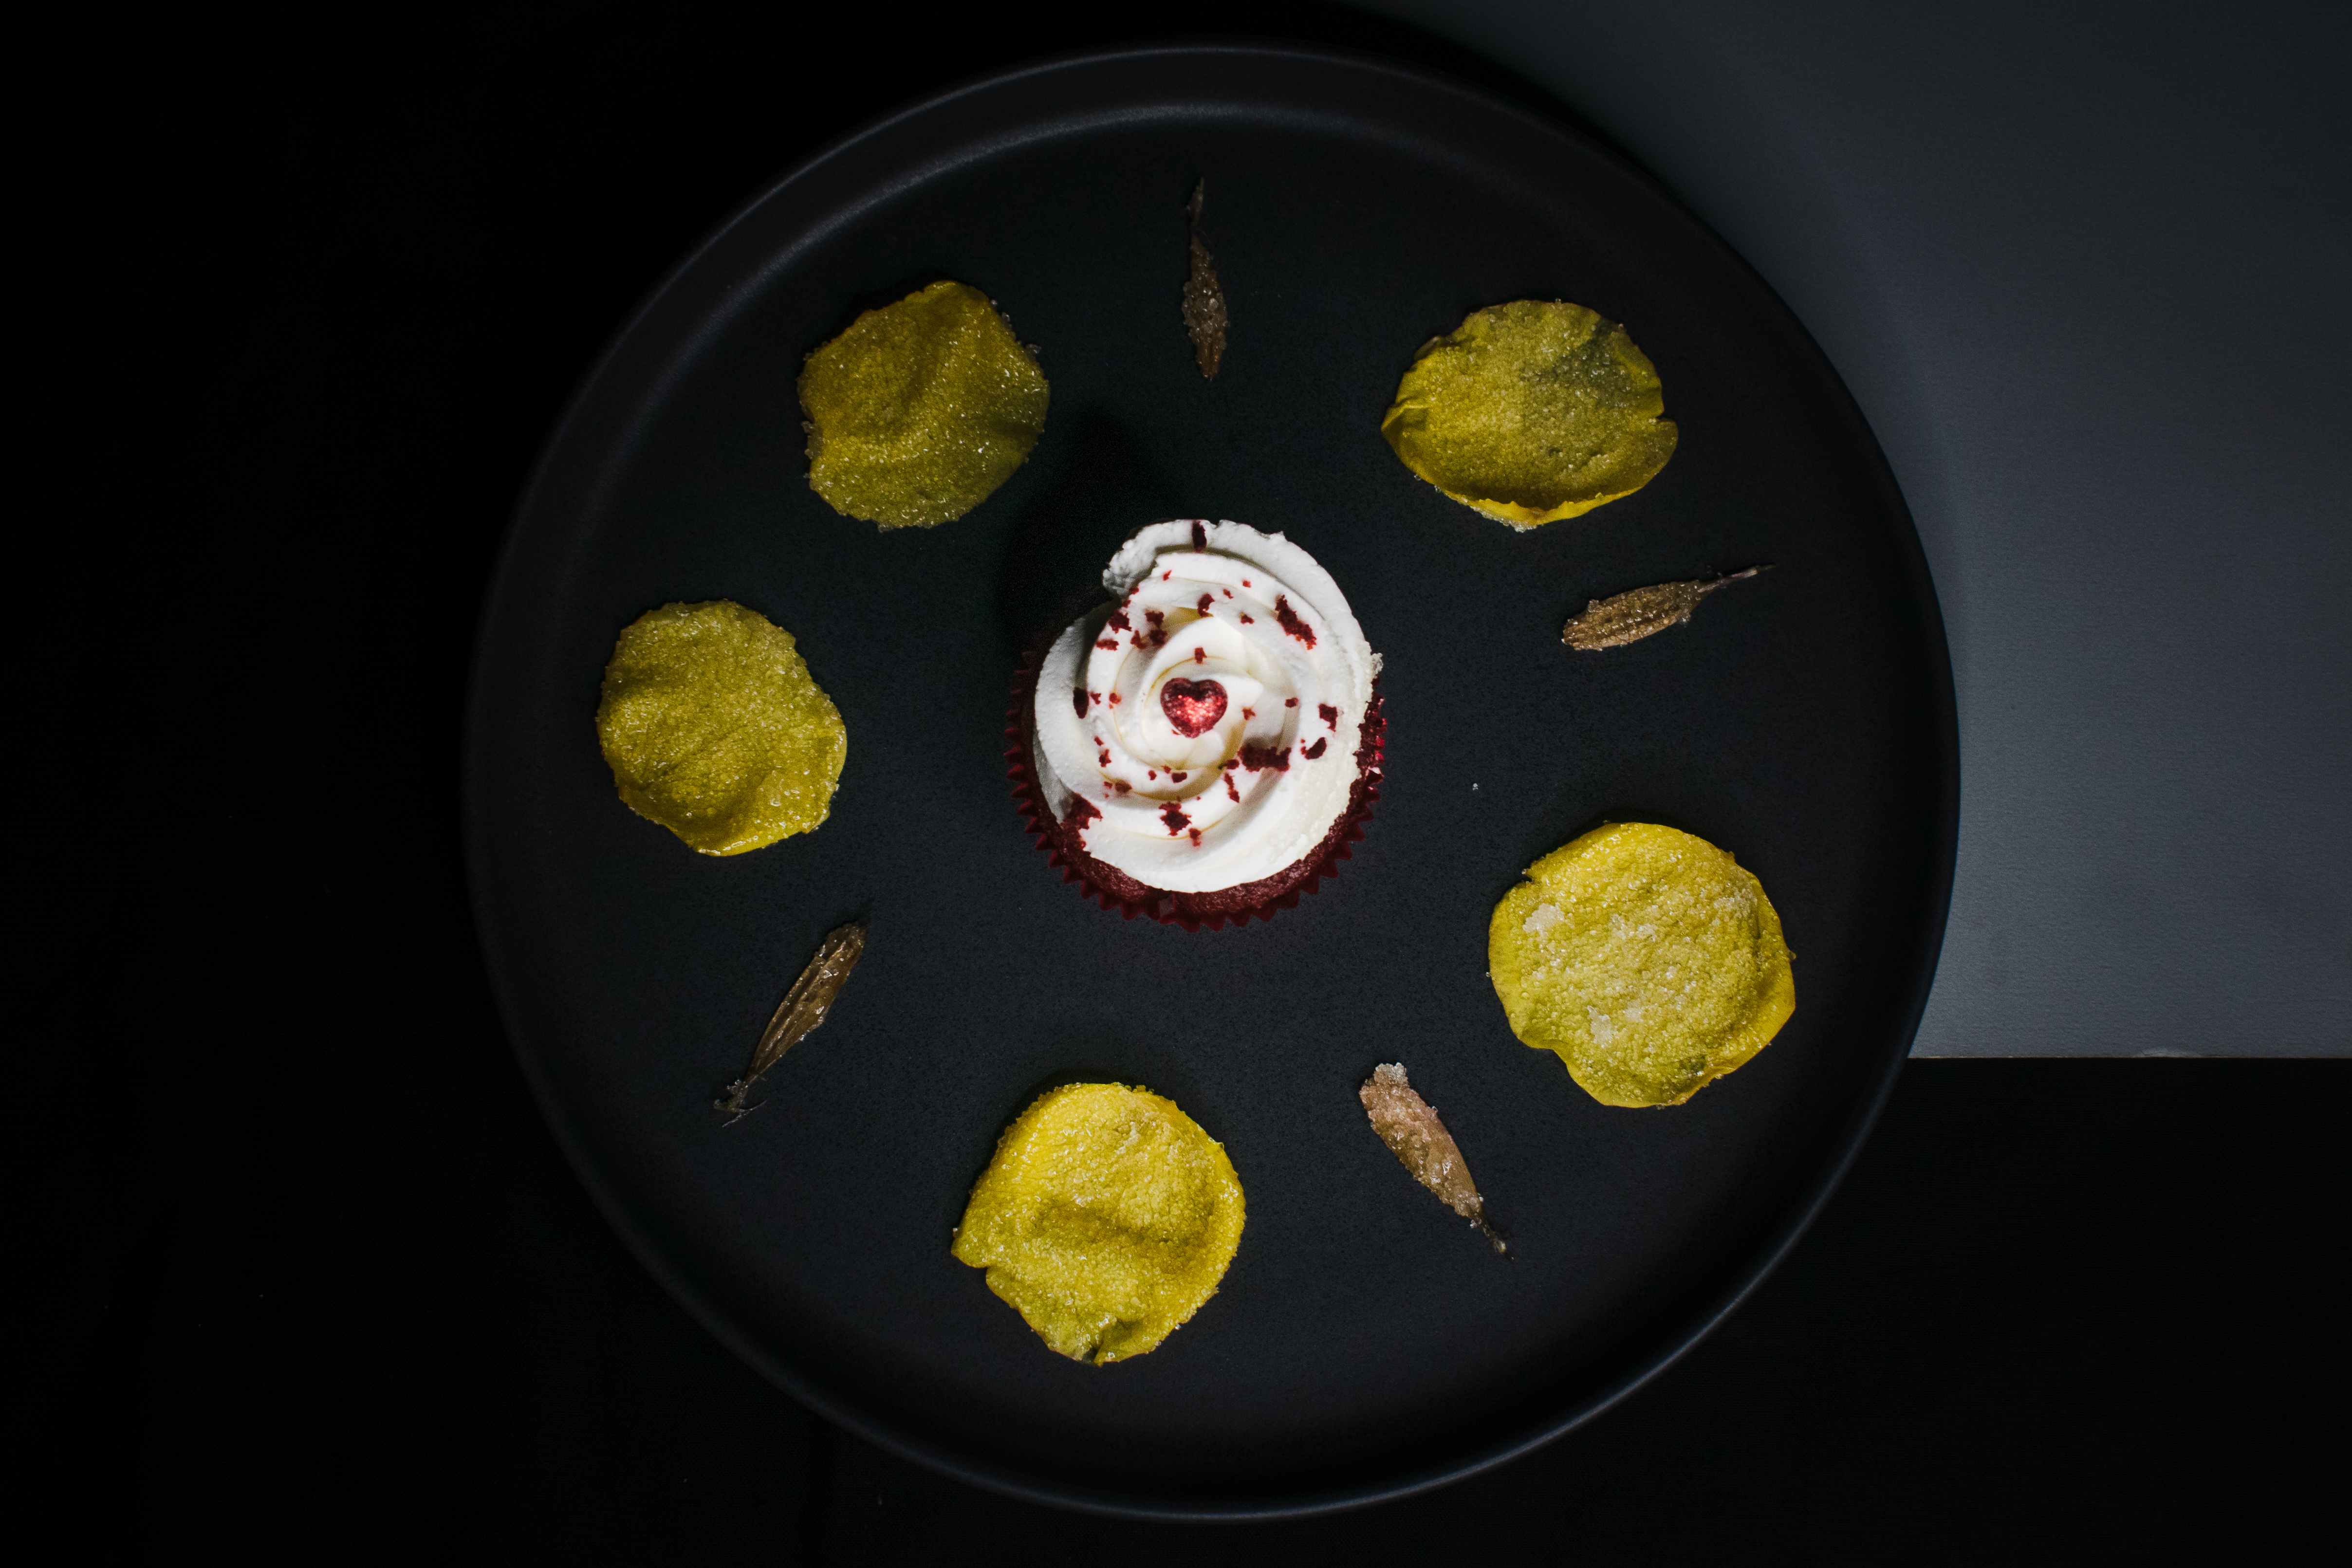 Cupcakes de red velvet, preparados por el chef y repostero Pablo Pacheco Soto, para conmemorar el Día de la Madre de una manera especial. (Foto Prensa Libre, cortesía de Daniel Pacheco)